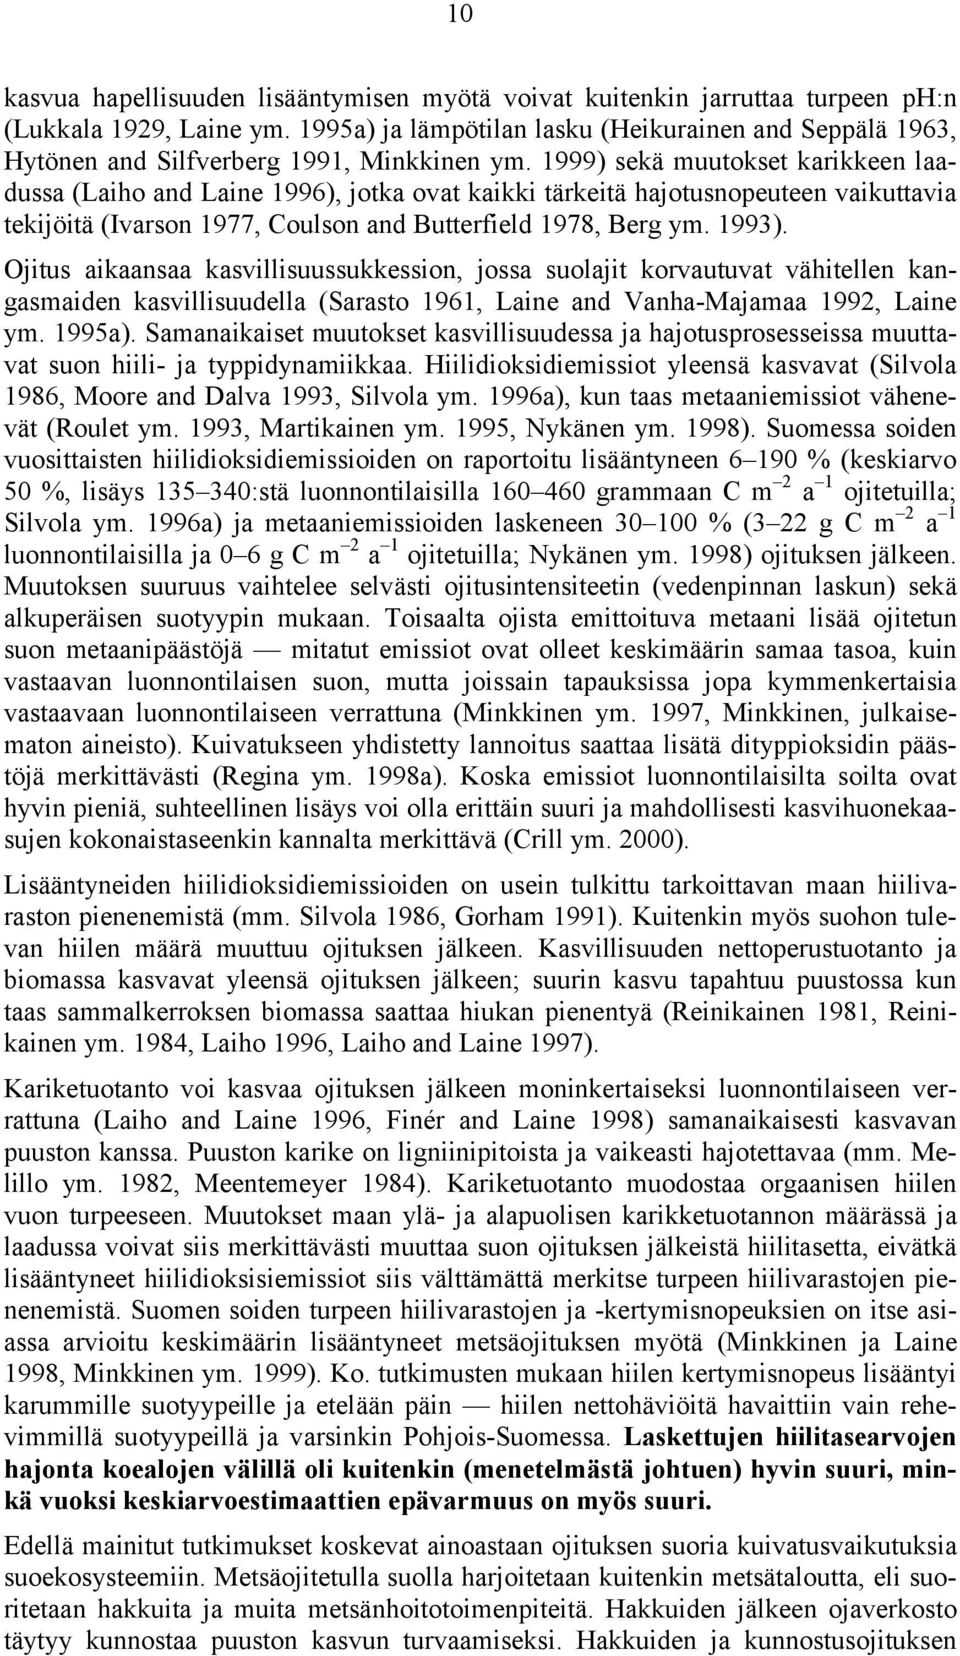 1999) sekä muutokset karikkeen laadussa (Laiho and Laine 1996), jotka ovat kaikki tärkeitä hajotusnopeuteen vaikuttavia tekijöitä (Ivarson 1977, Coulson and Butterfield 1978, Berg ym. 1993).